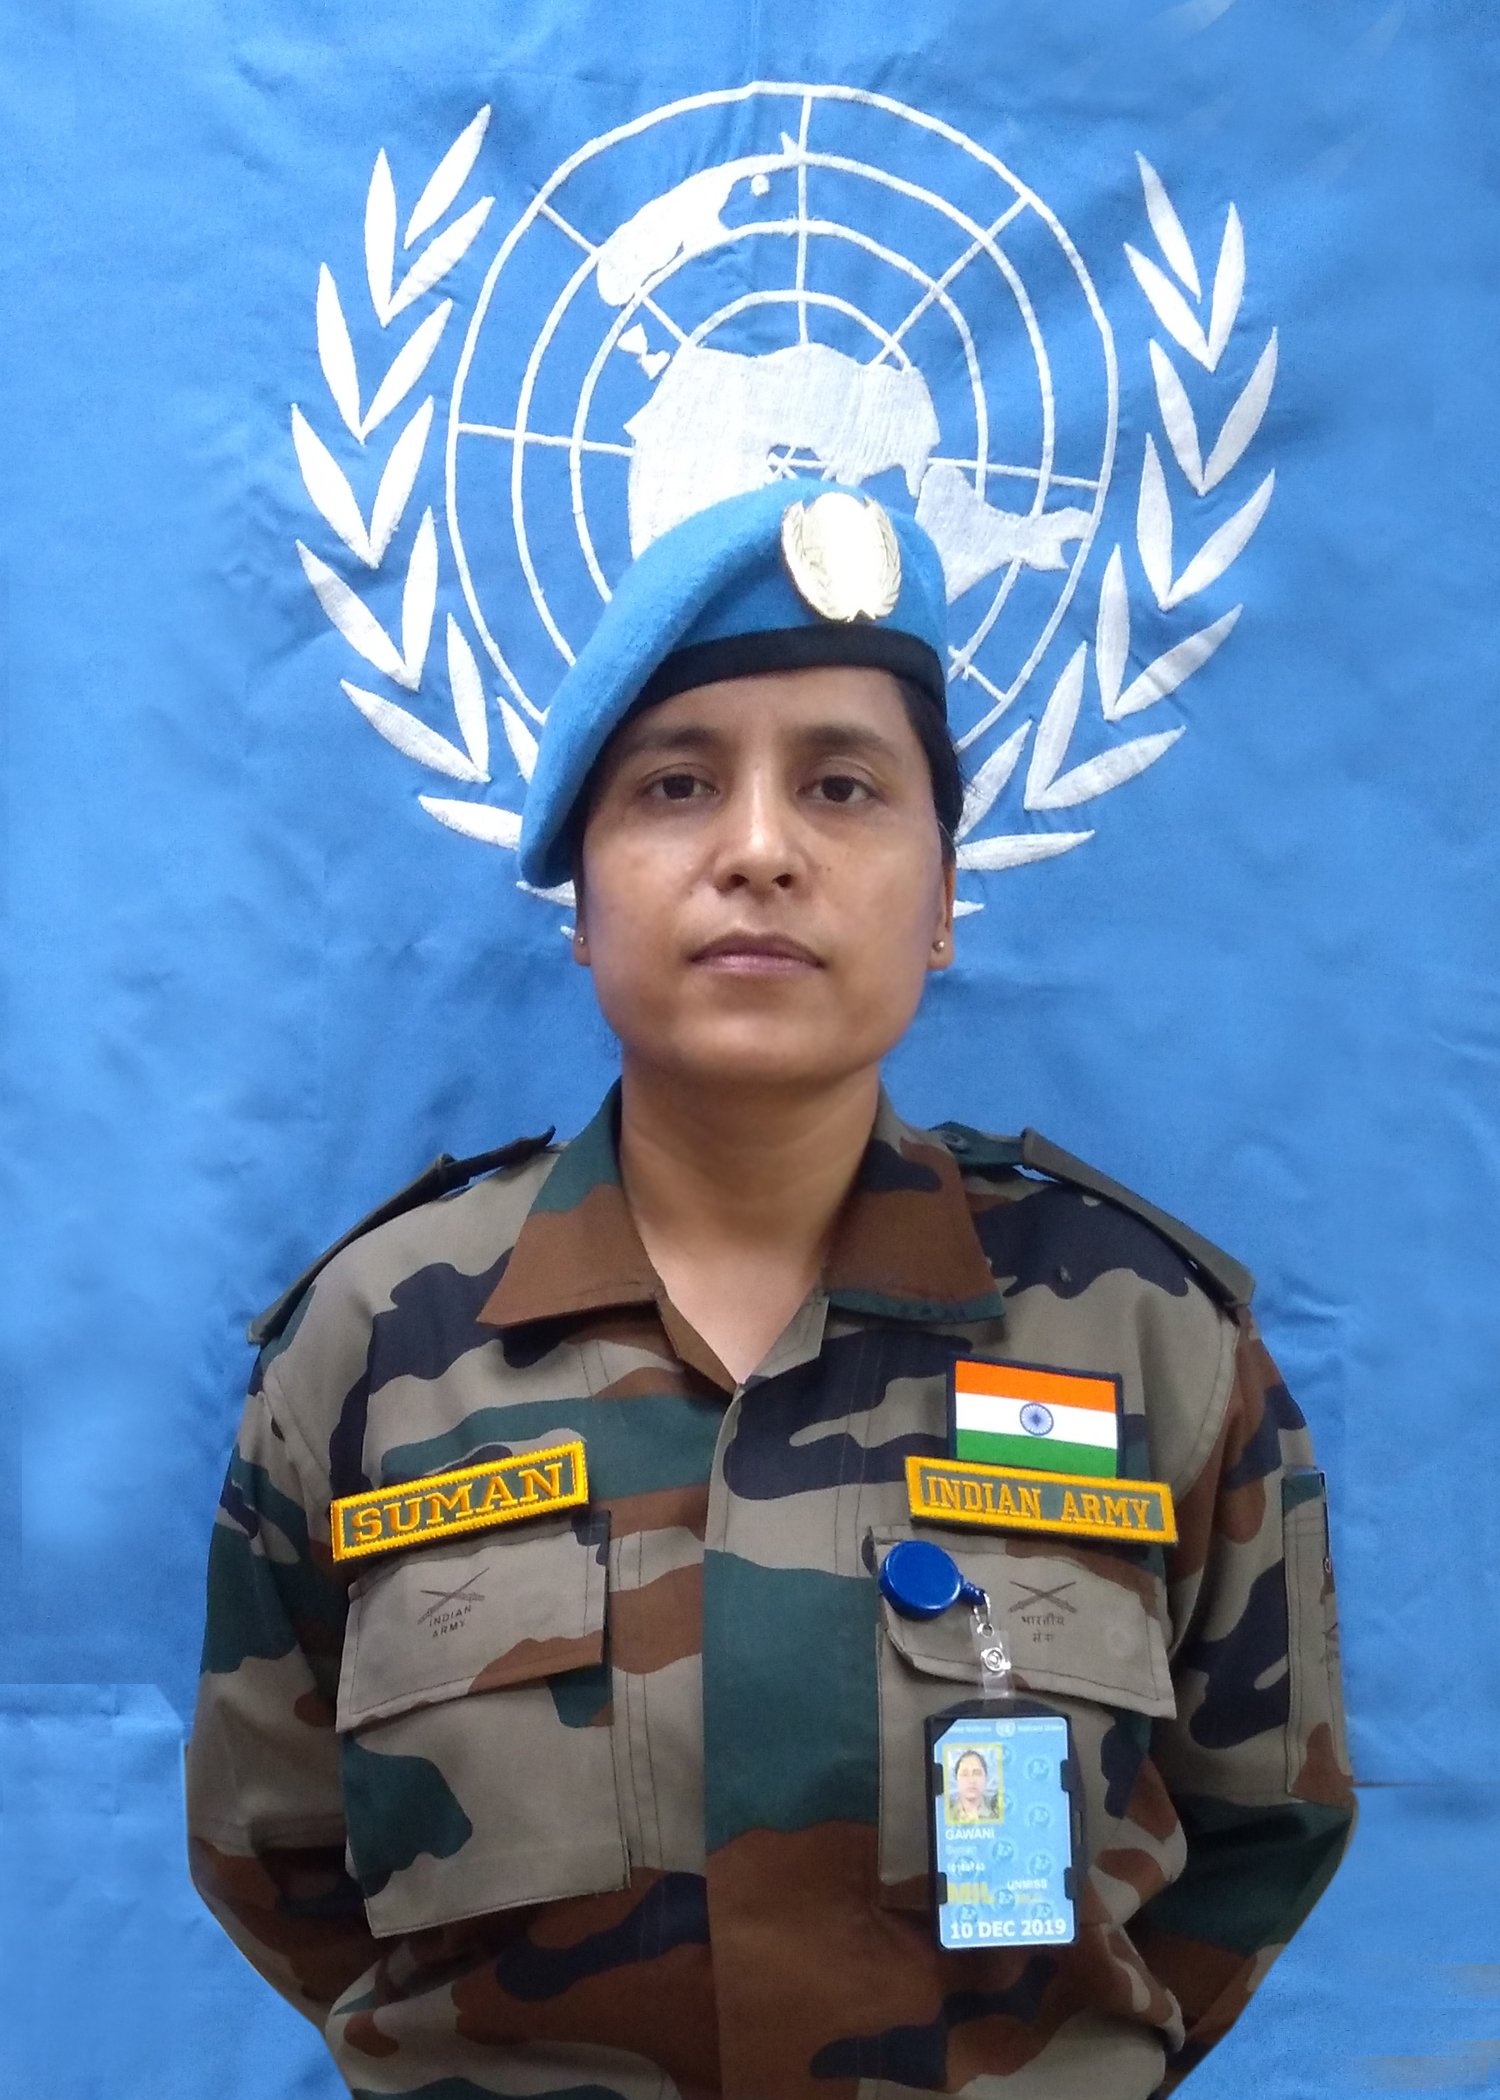 United Nations Award to Indian Army Officer Major Suman Gawani